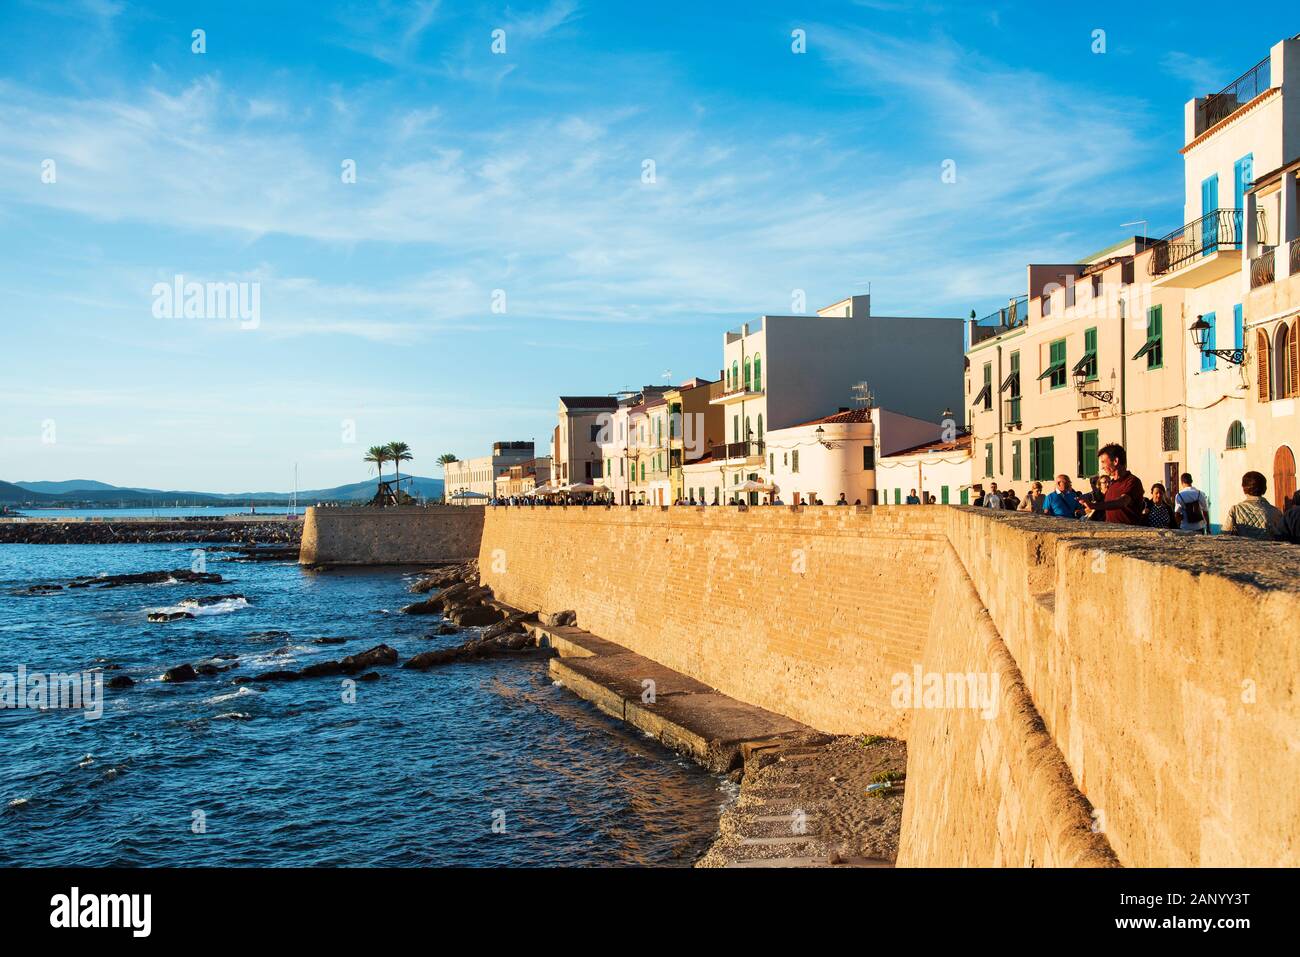 ALGHERO, Italien - 17. SEPTEMBER 2017: Leute an der Ringmauer, neben dem Meer, des Centro Storico, die Altstadt von Alghero, Sardinien, Ita Stockfoto